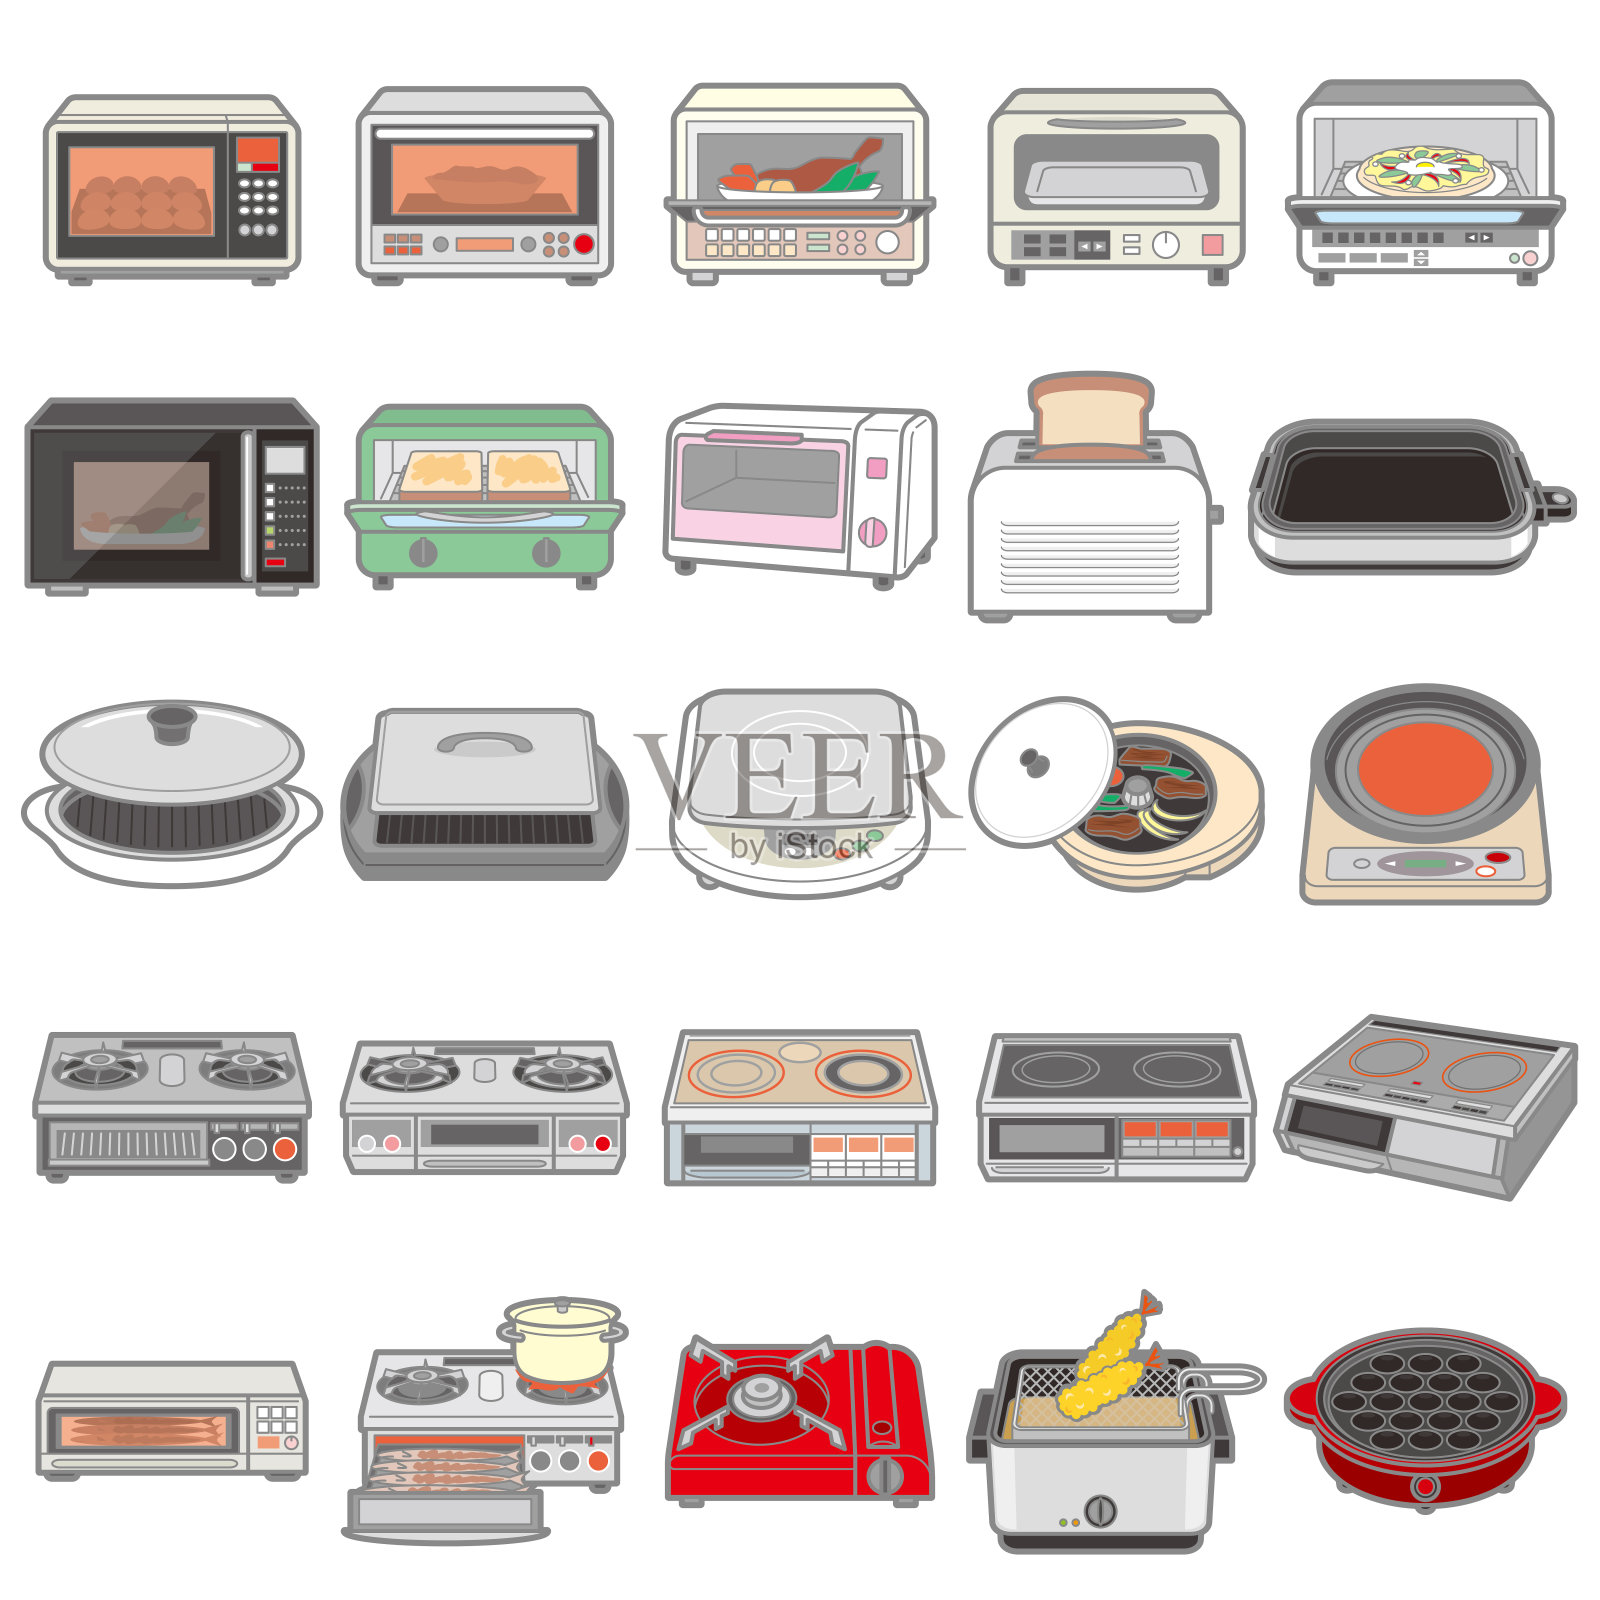 各种电器/厨房图示插画图片素材